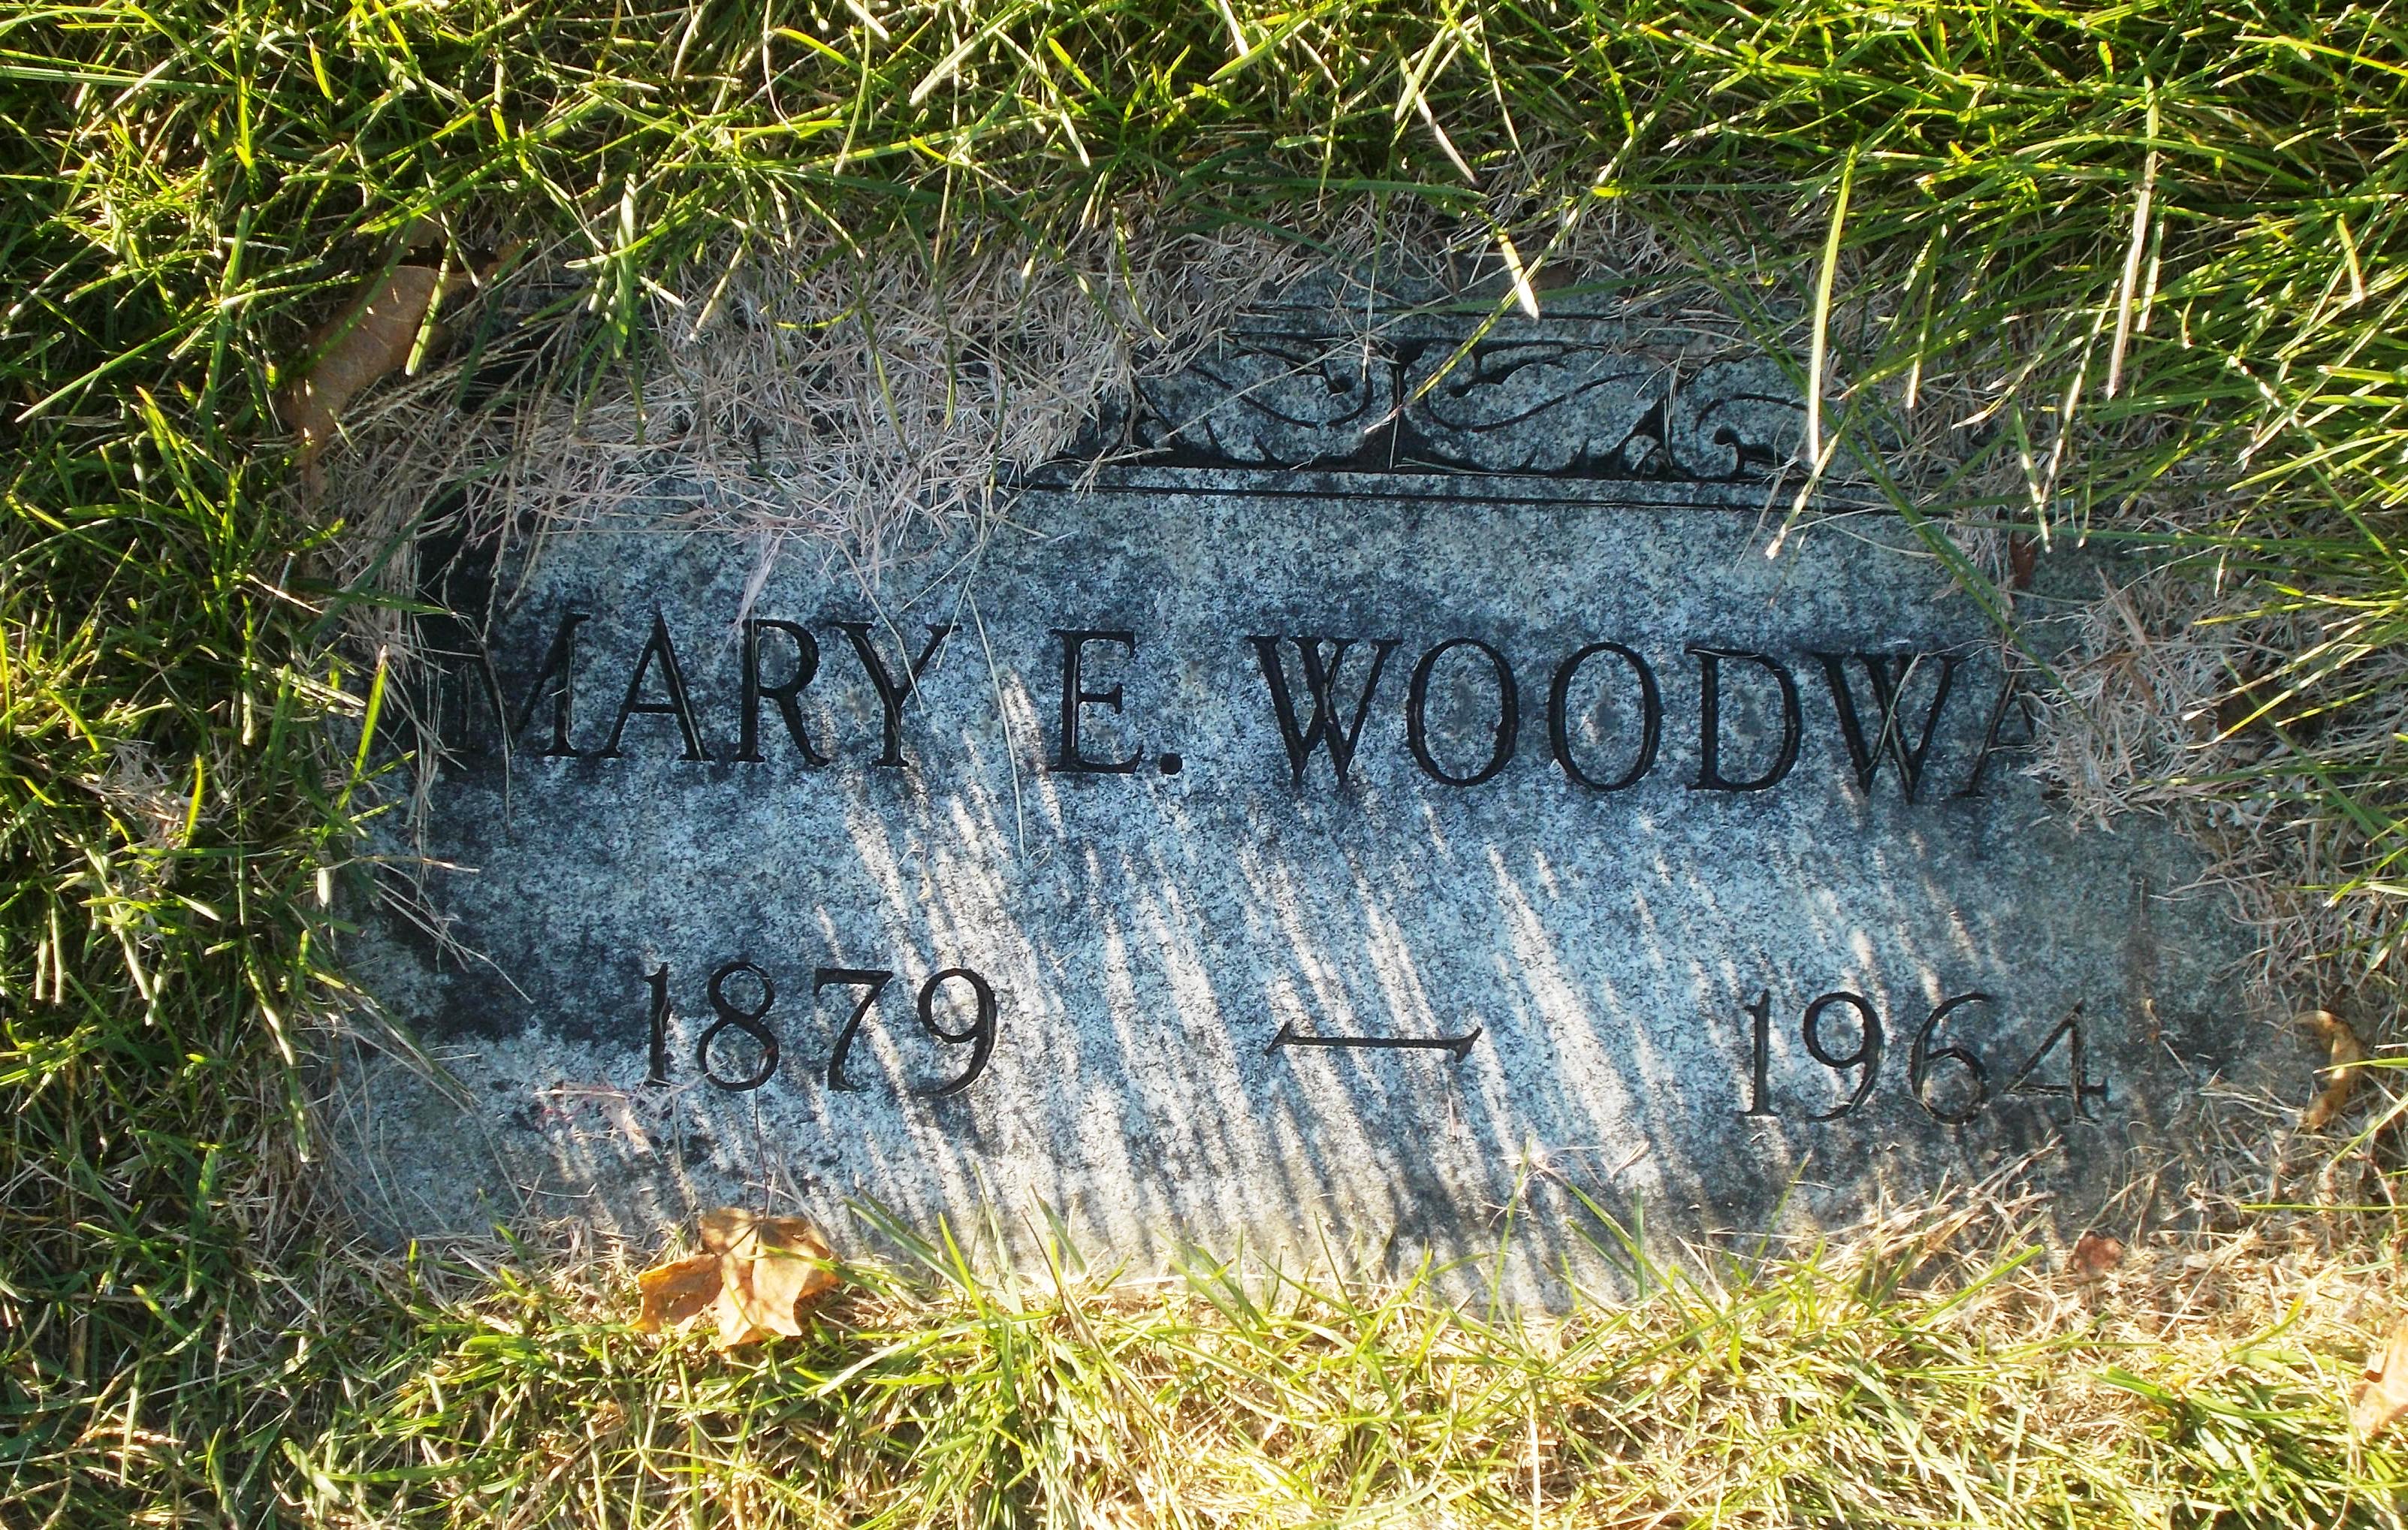 Mary E Woodward